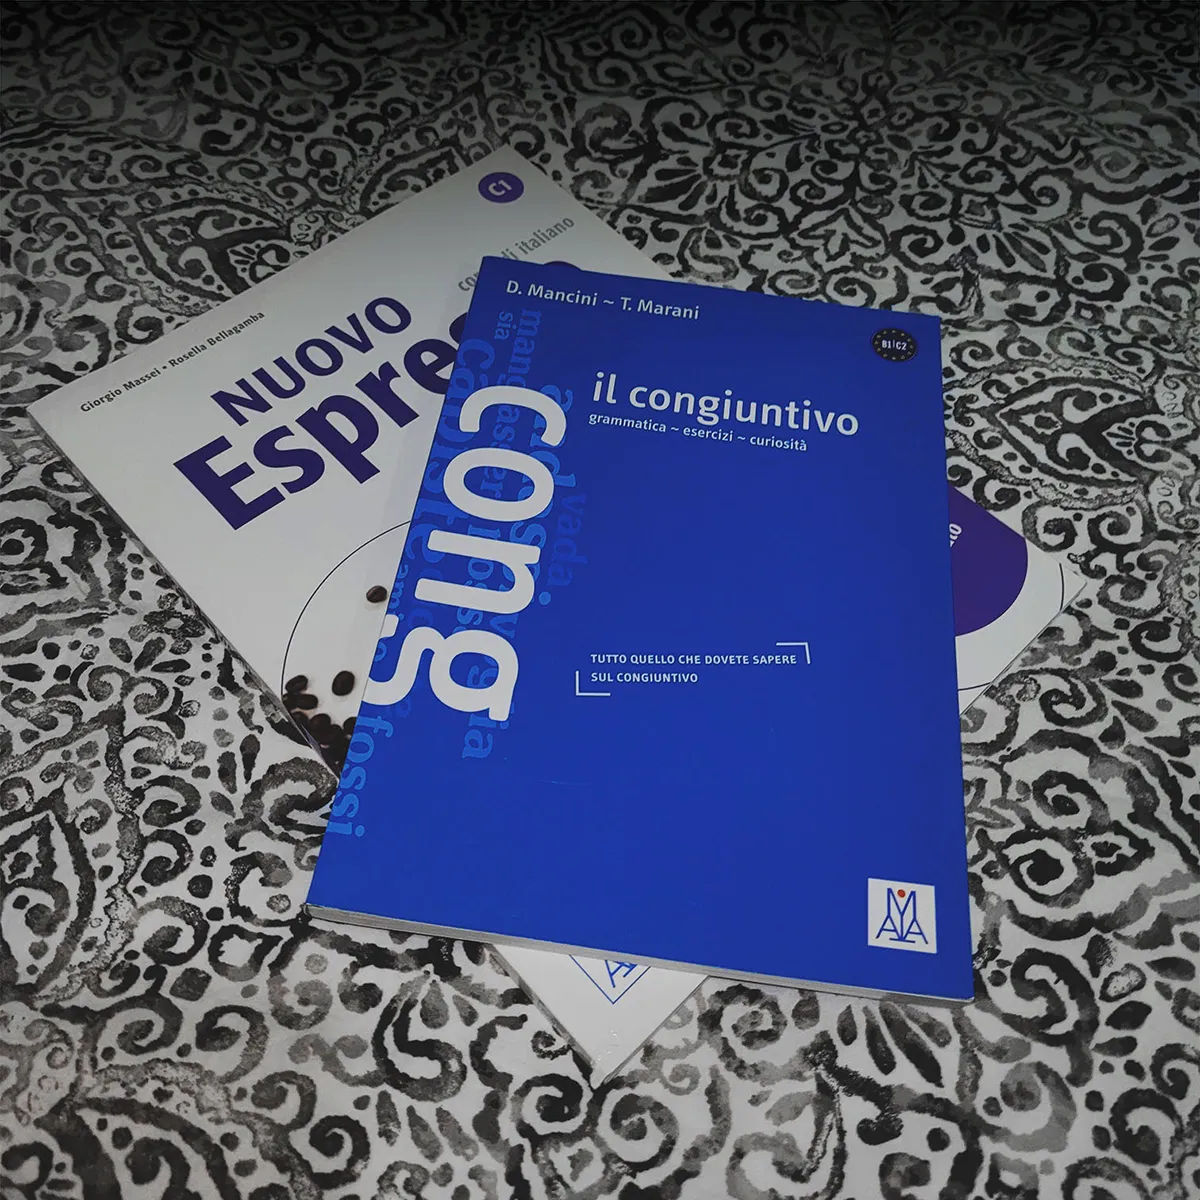 Italian language classes - more school books